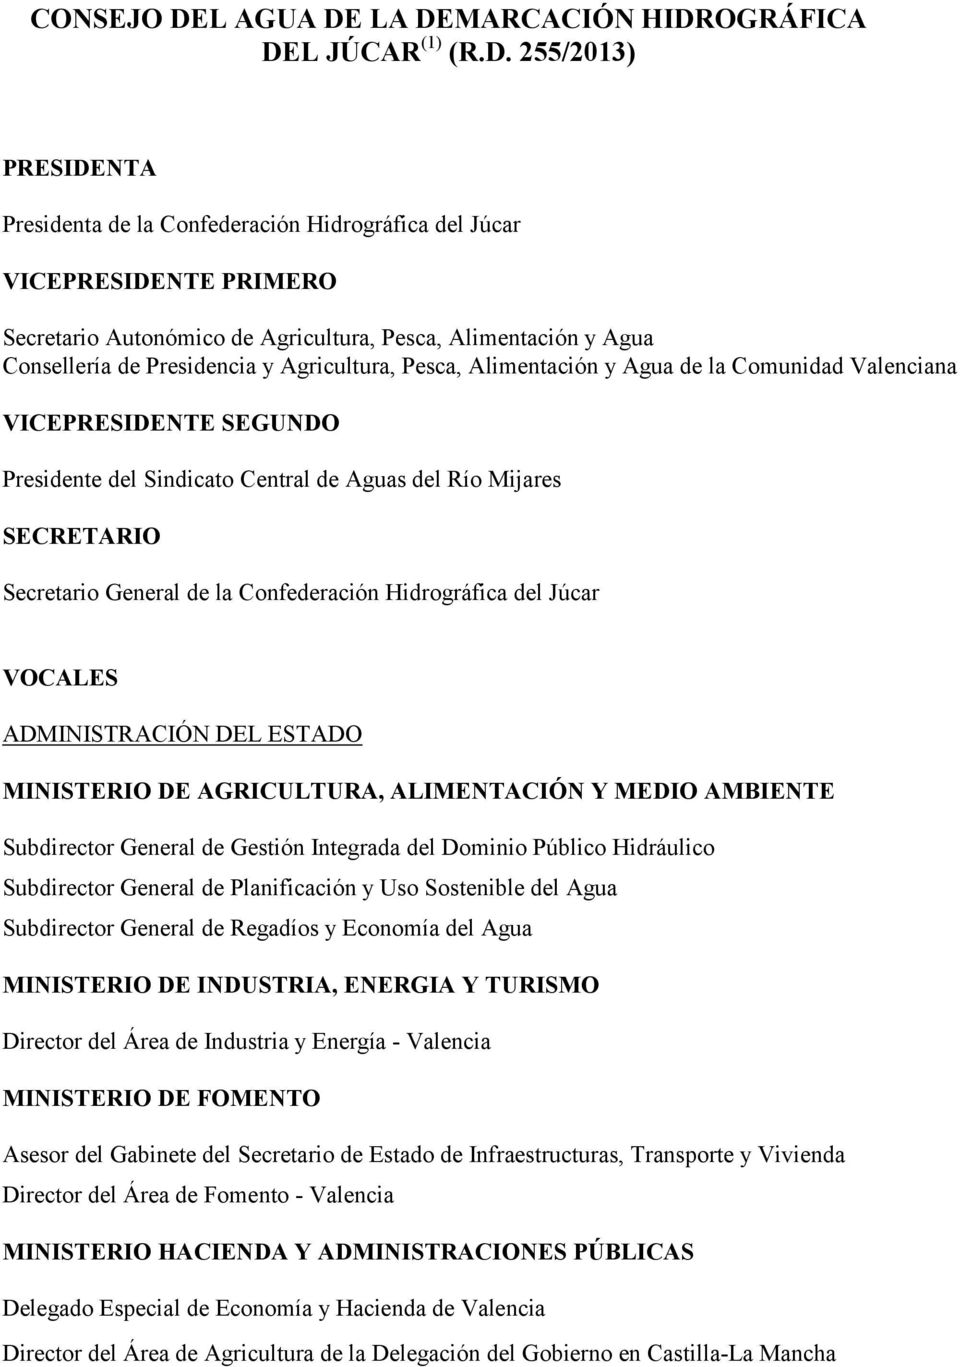 LA DEMARCACIÓN HIDROGRÁFICA DEL JÚCAR (1) (R.D. 255/2013) PRESIDENTA Presidenta de la Confederación Hidrográfica del Júcar VICEPRESIDENTE PRIMERO Secretario Autonómico de Agricultura, Pesca,